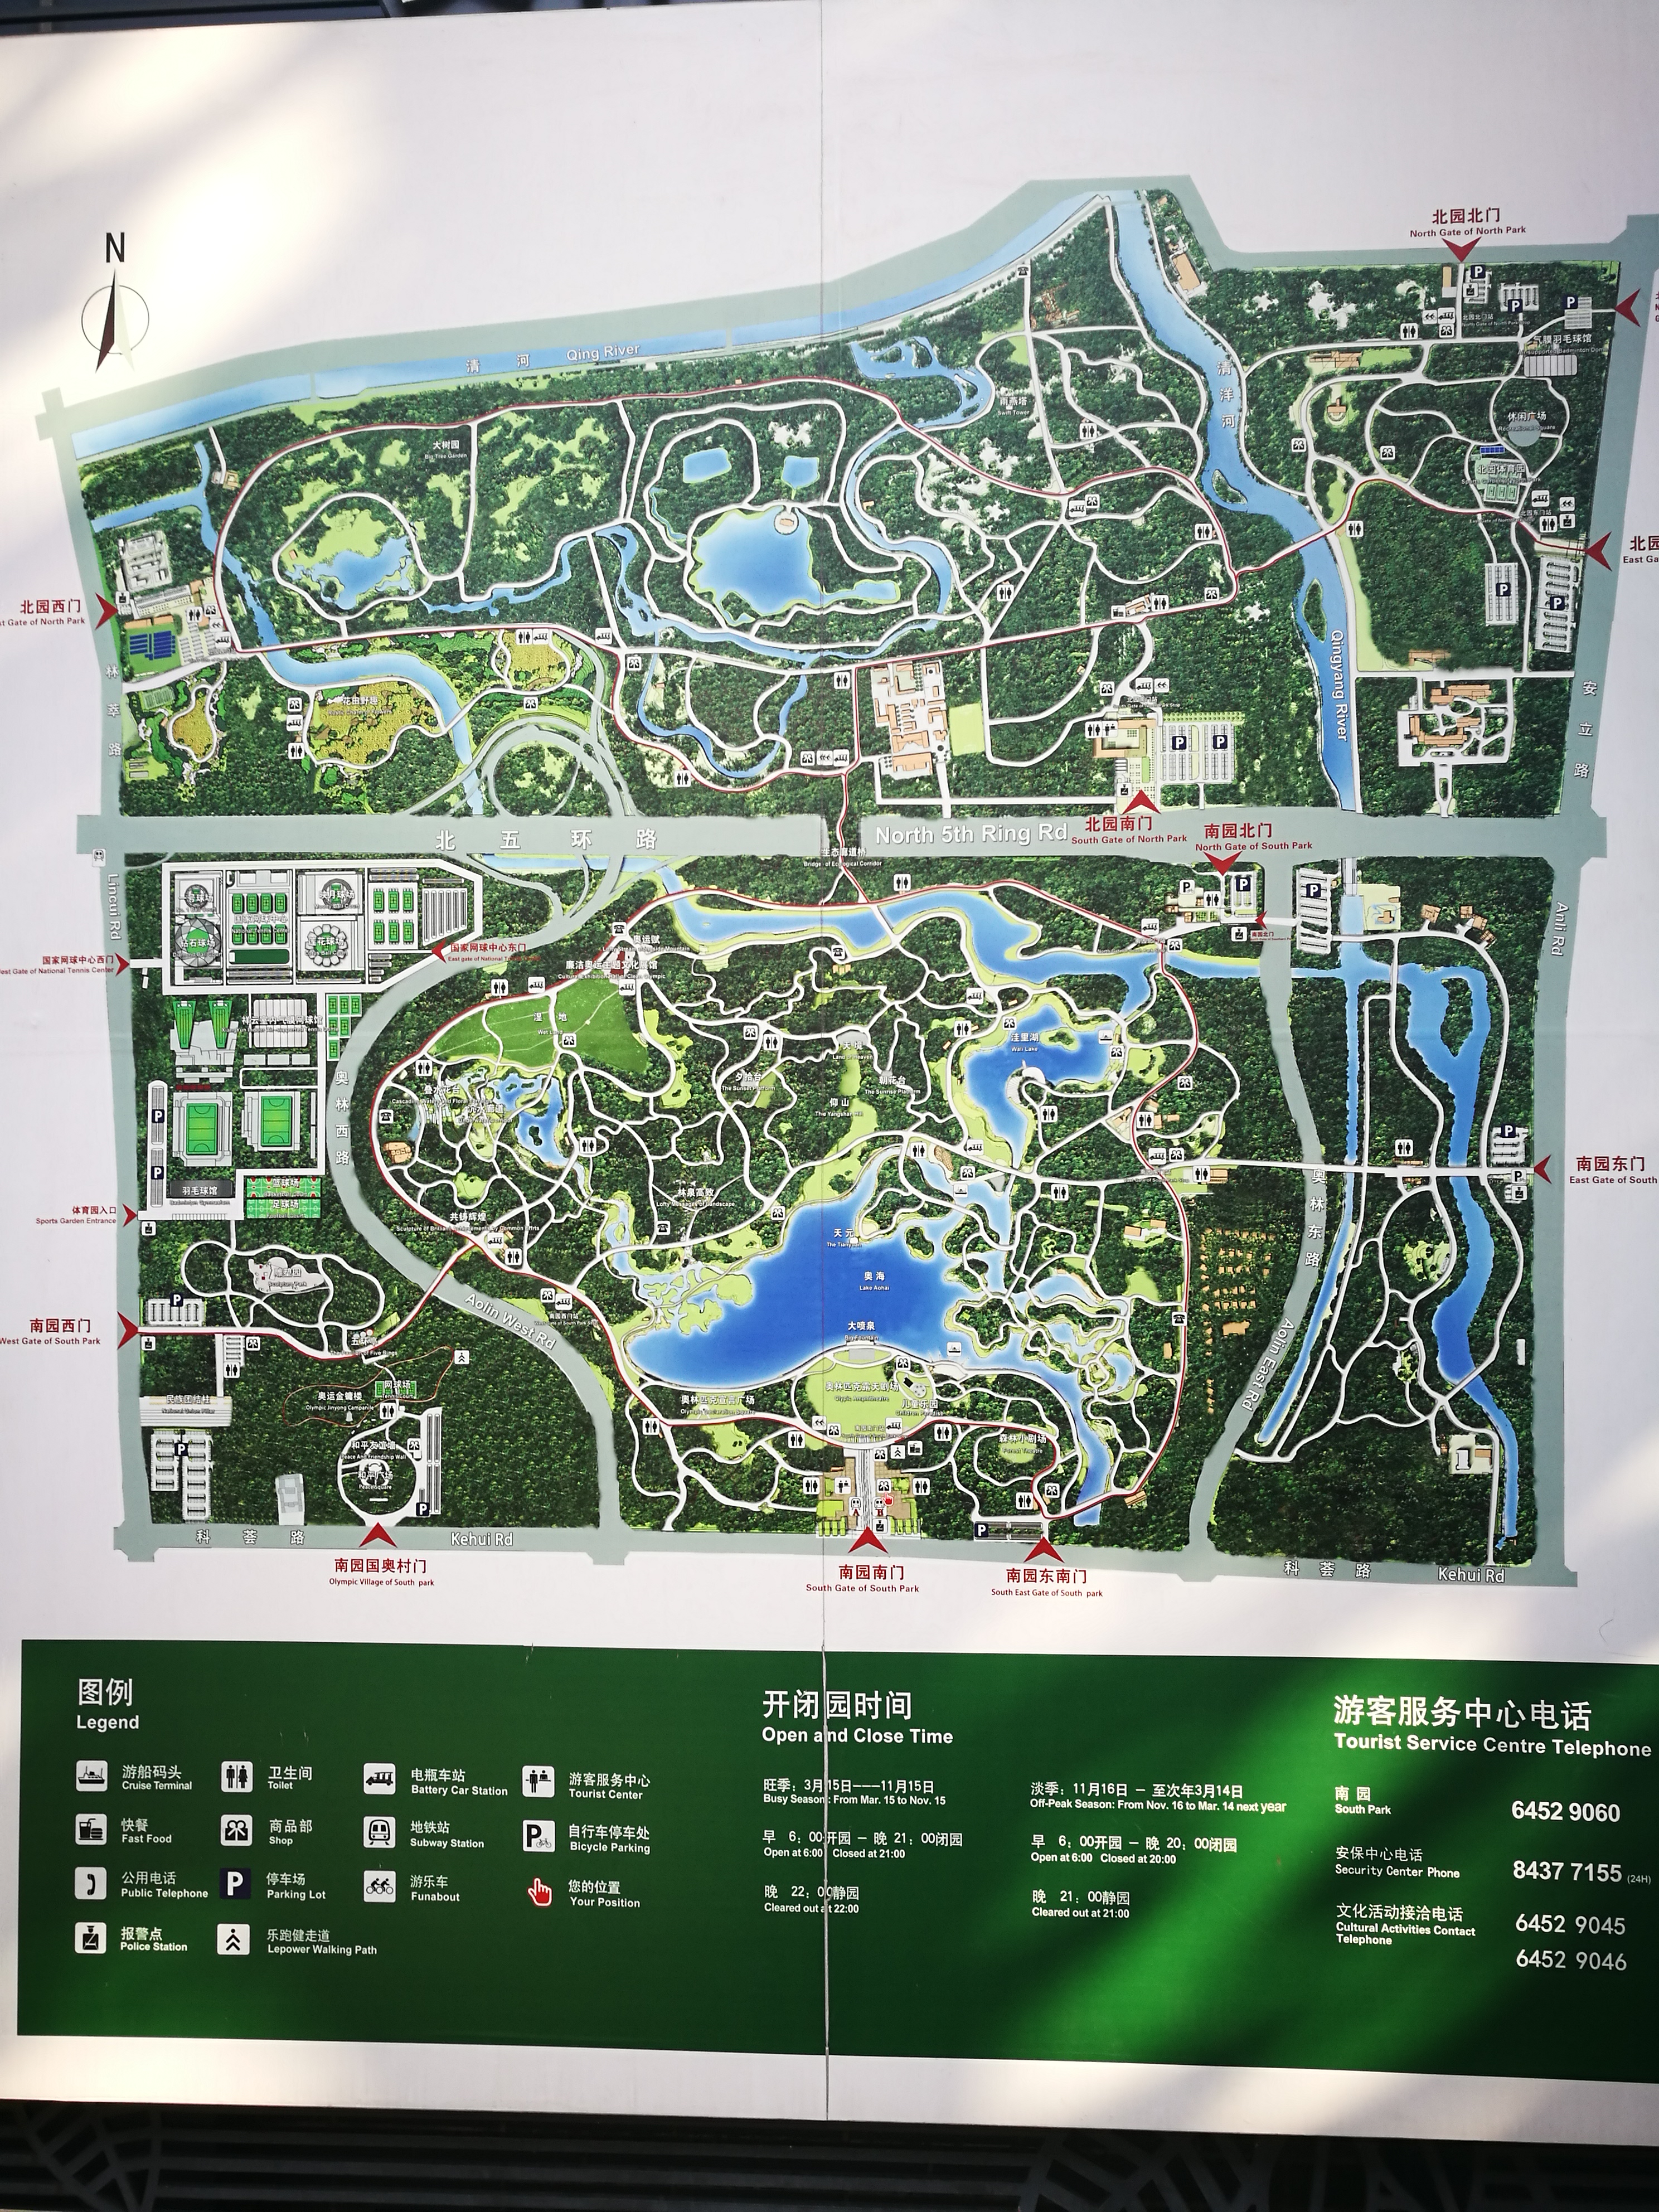 奥运公园地图图片